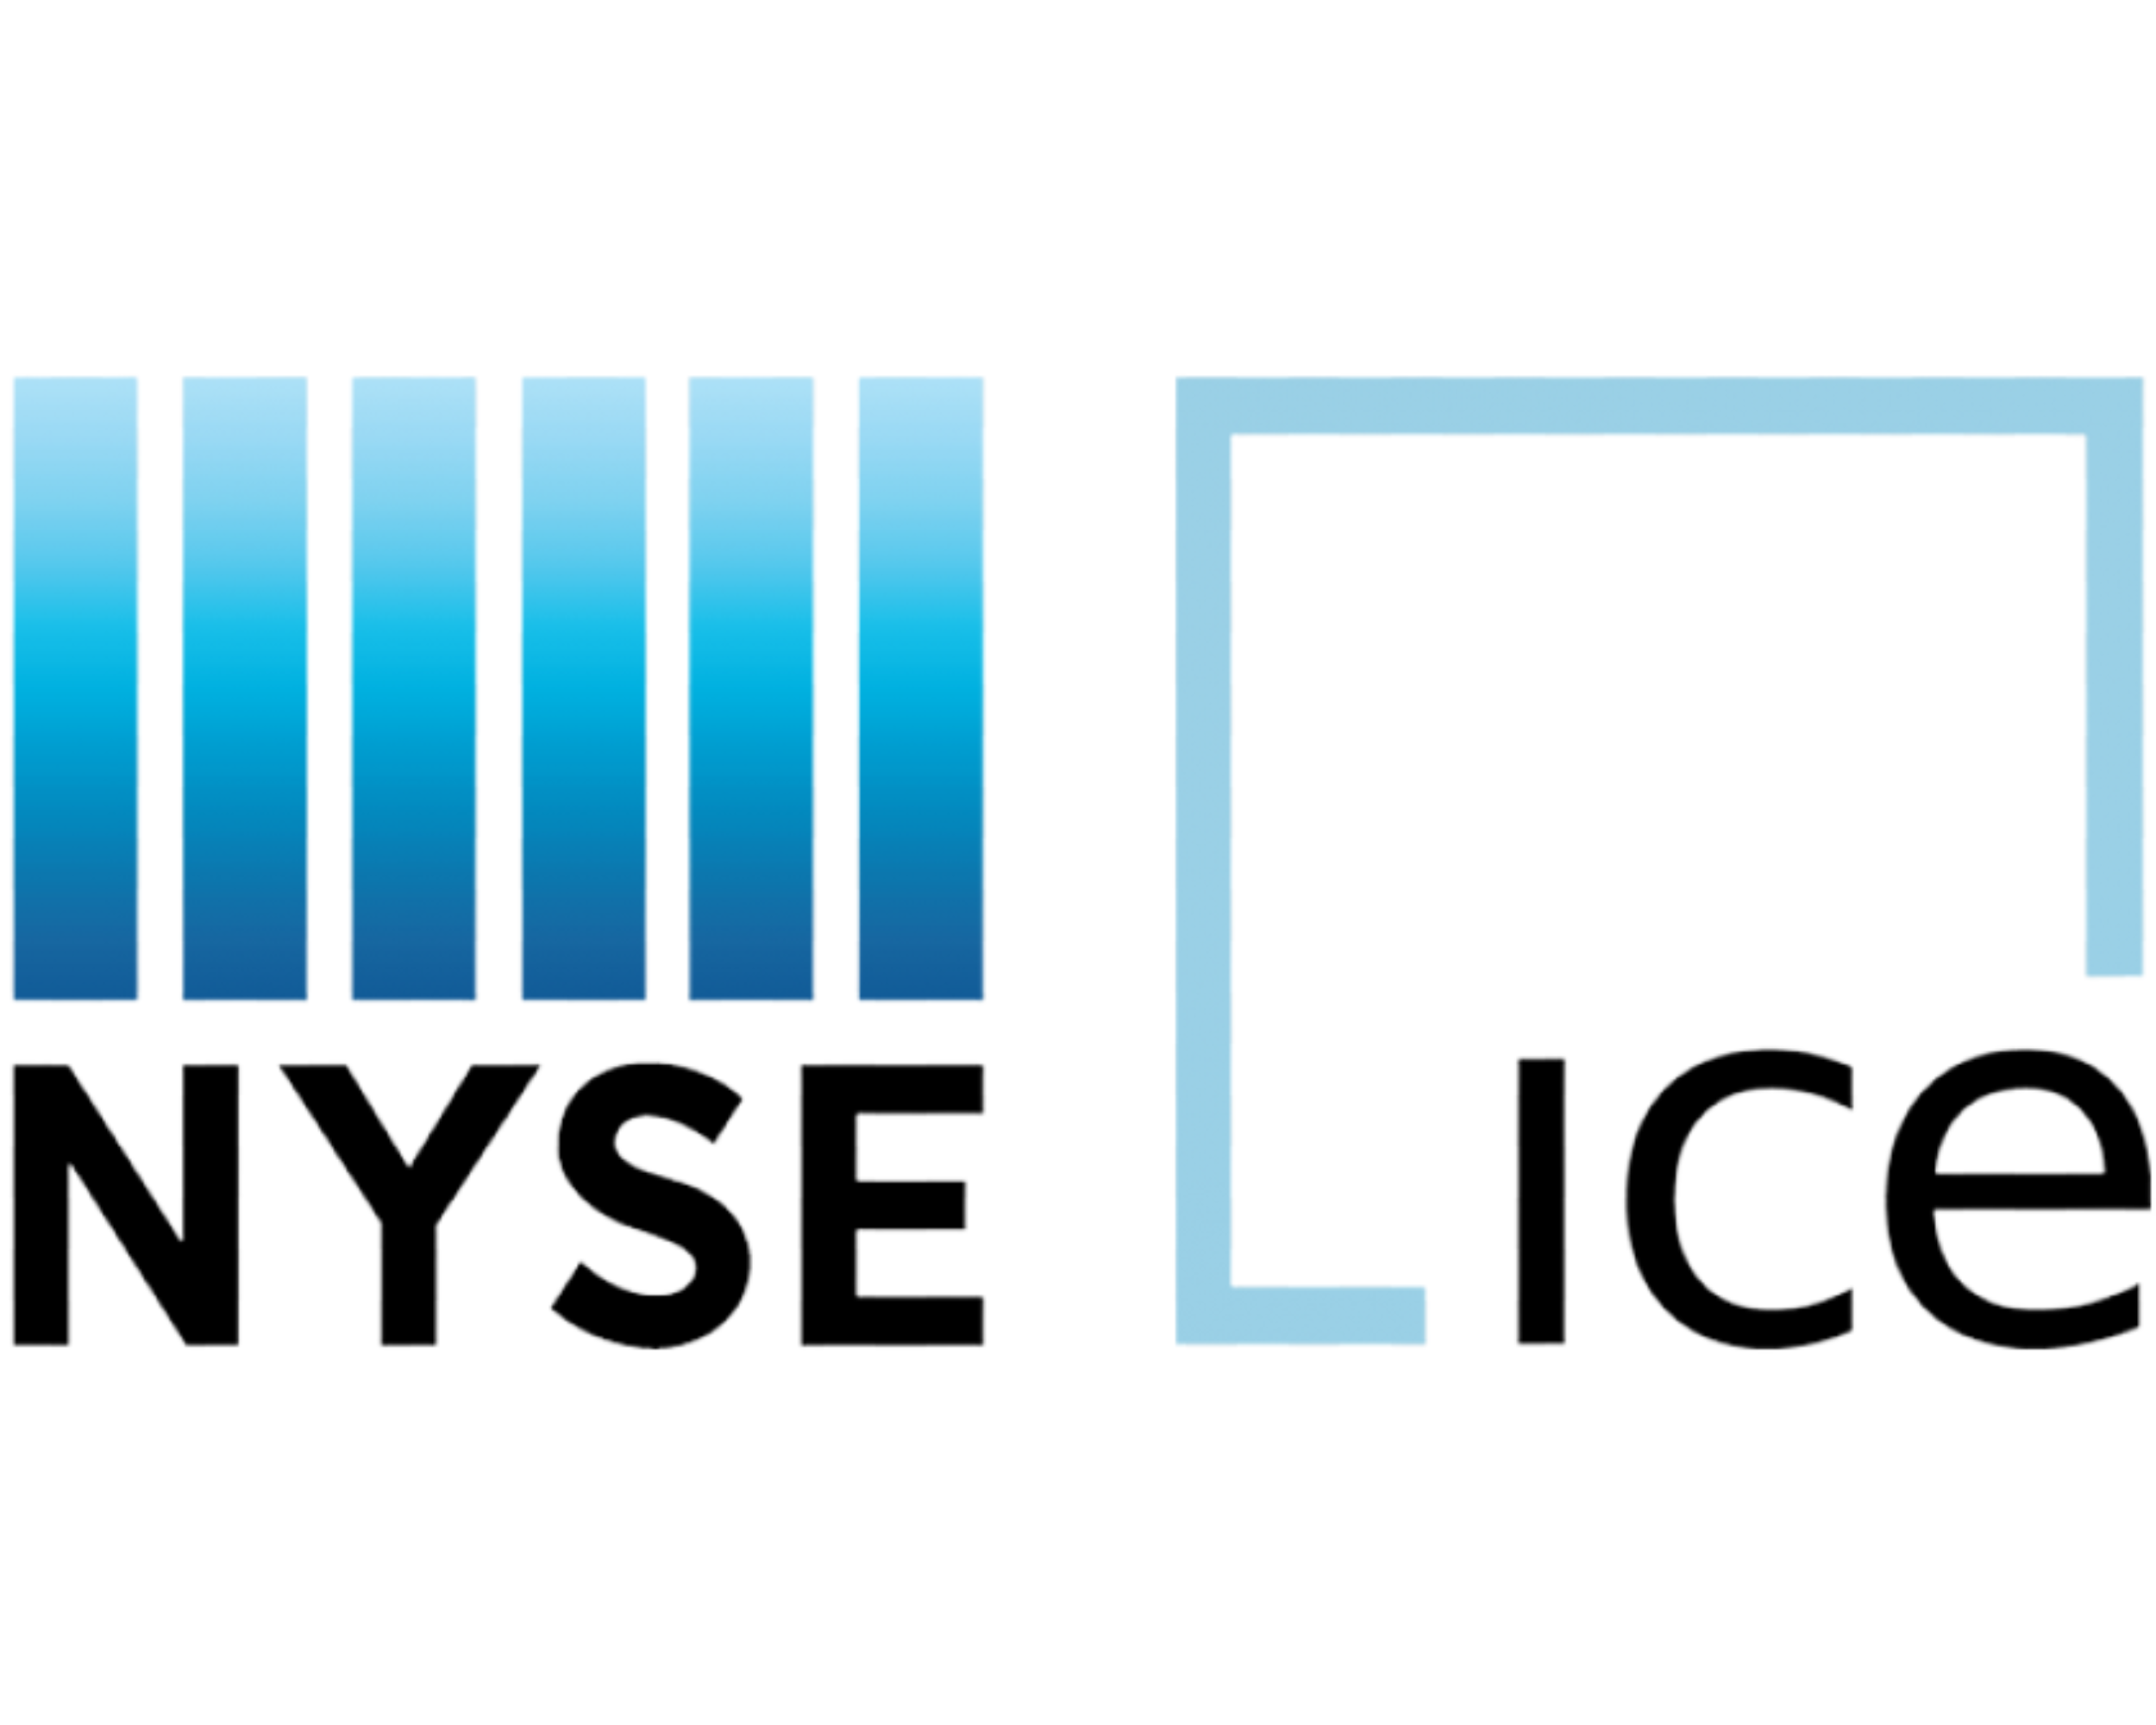 NYSE_ICE_LOGO_ESG